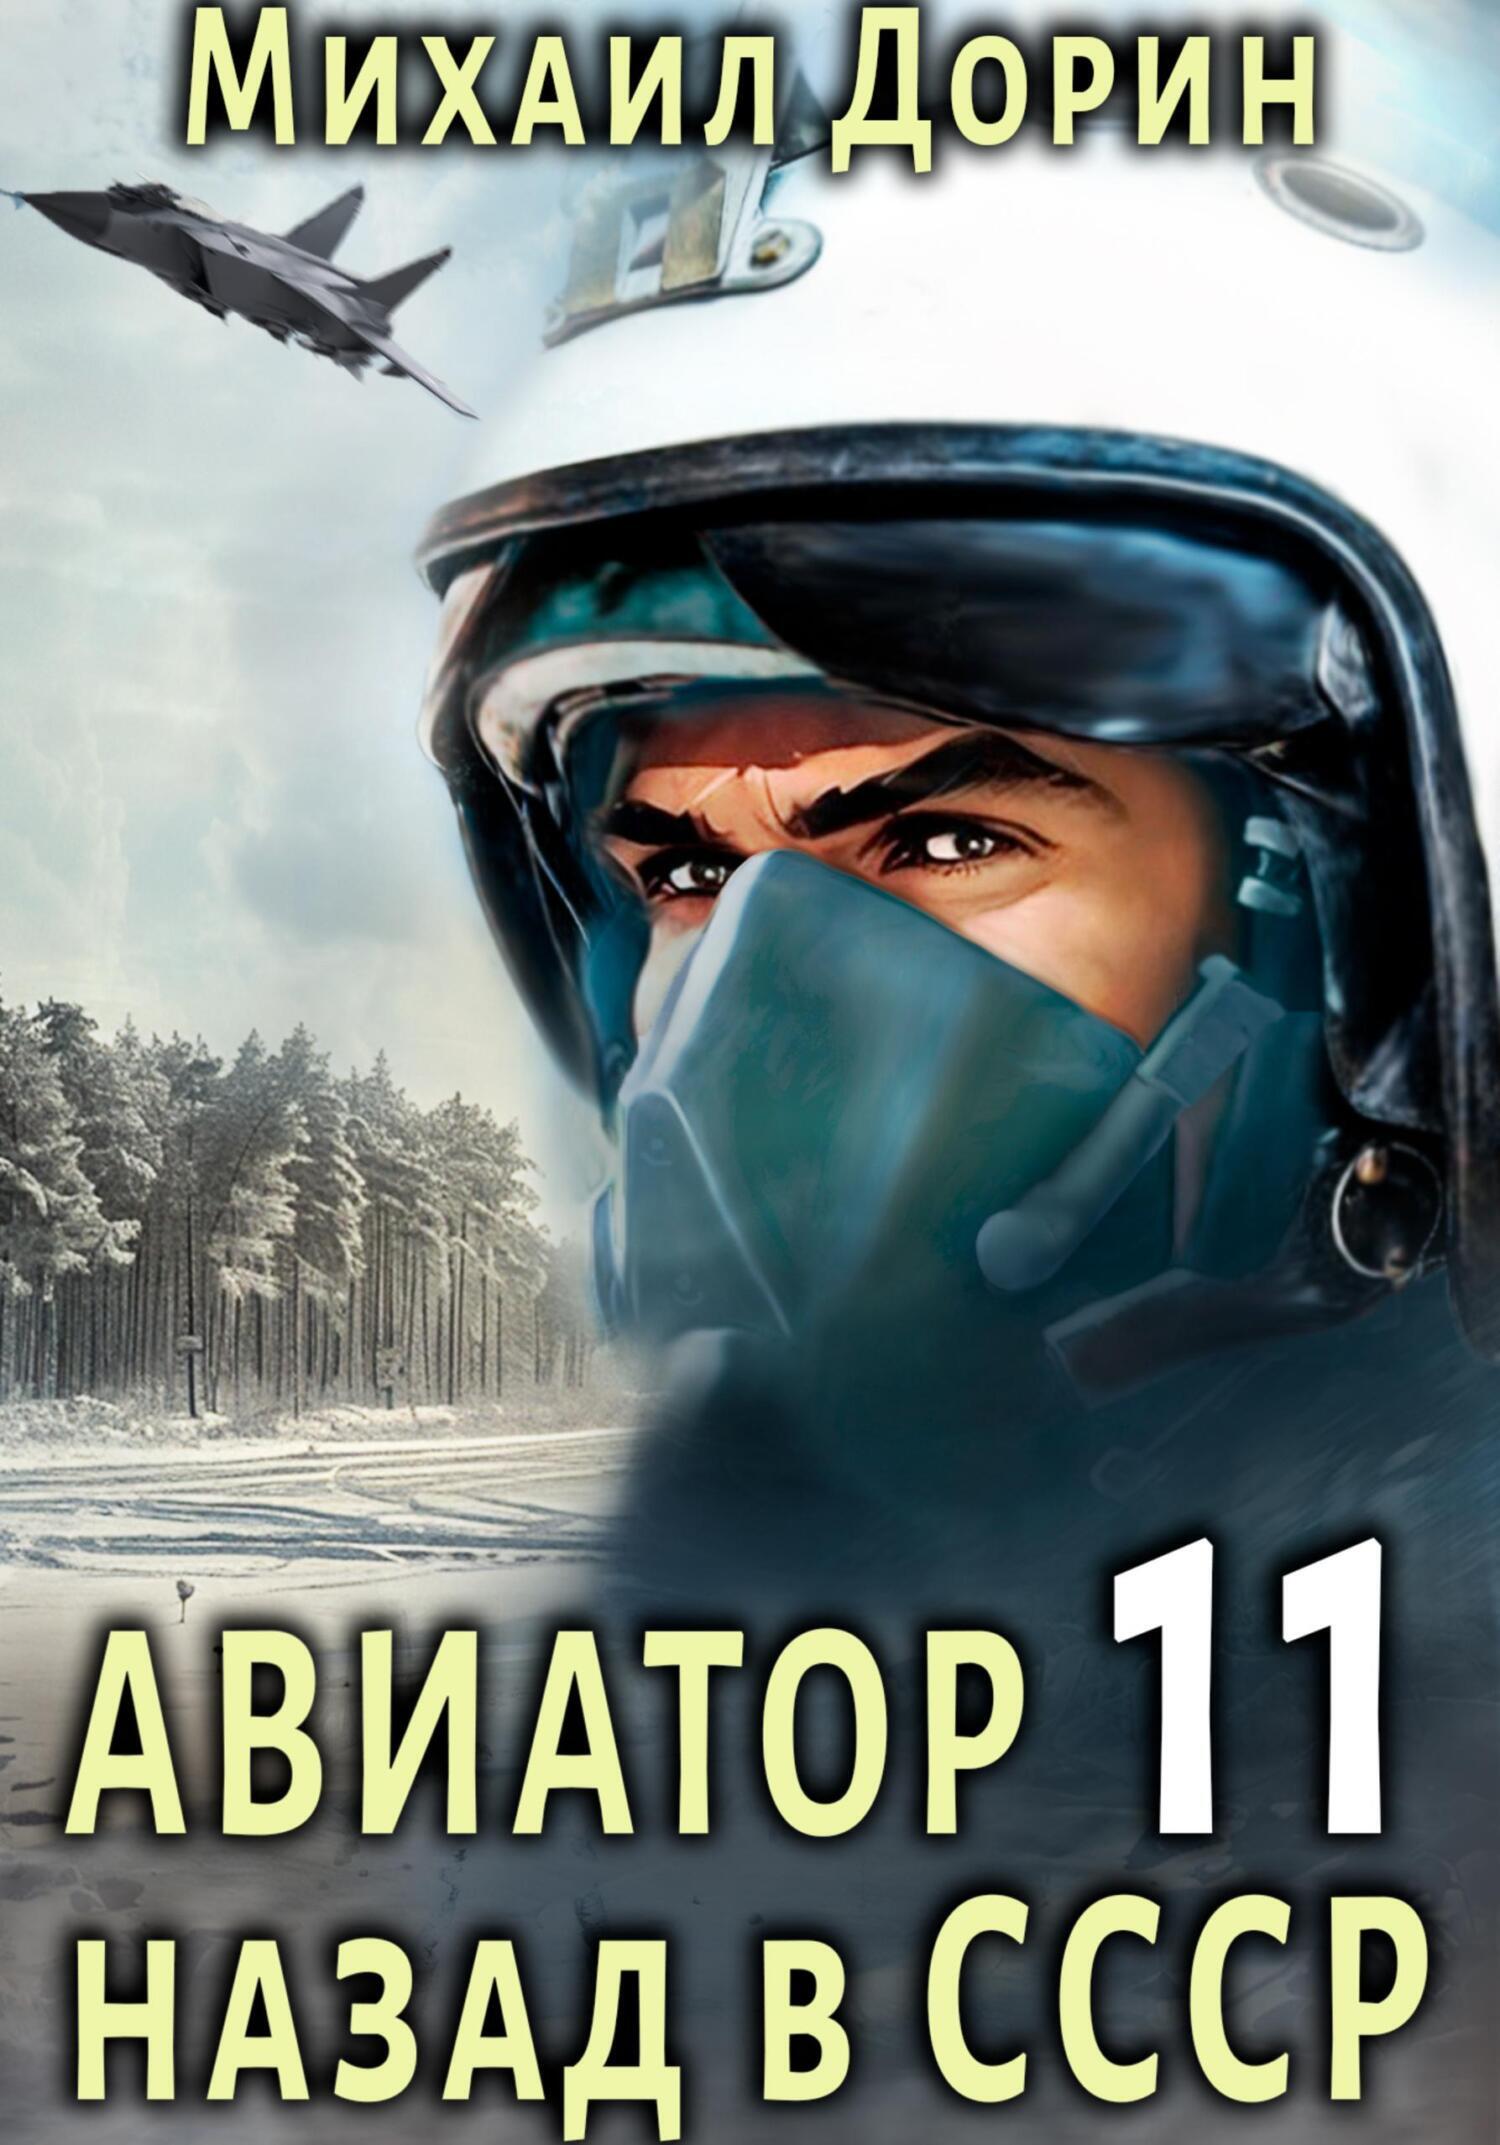 Авиатор: назад в СССР 11